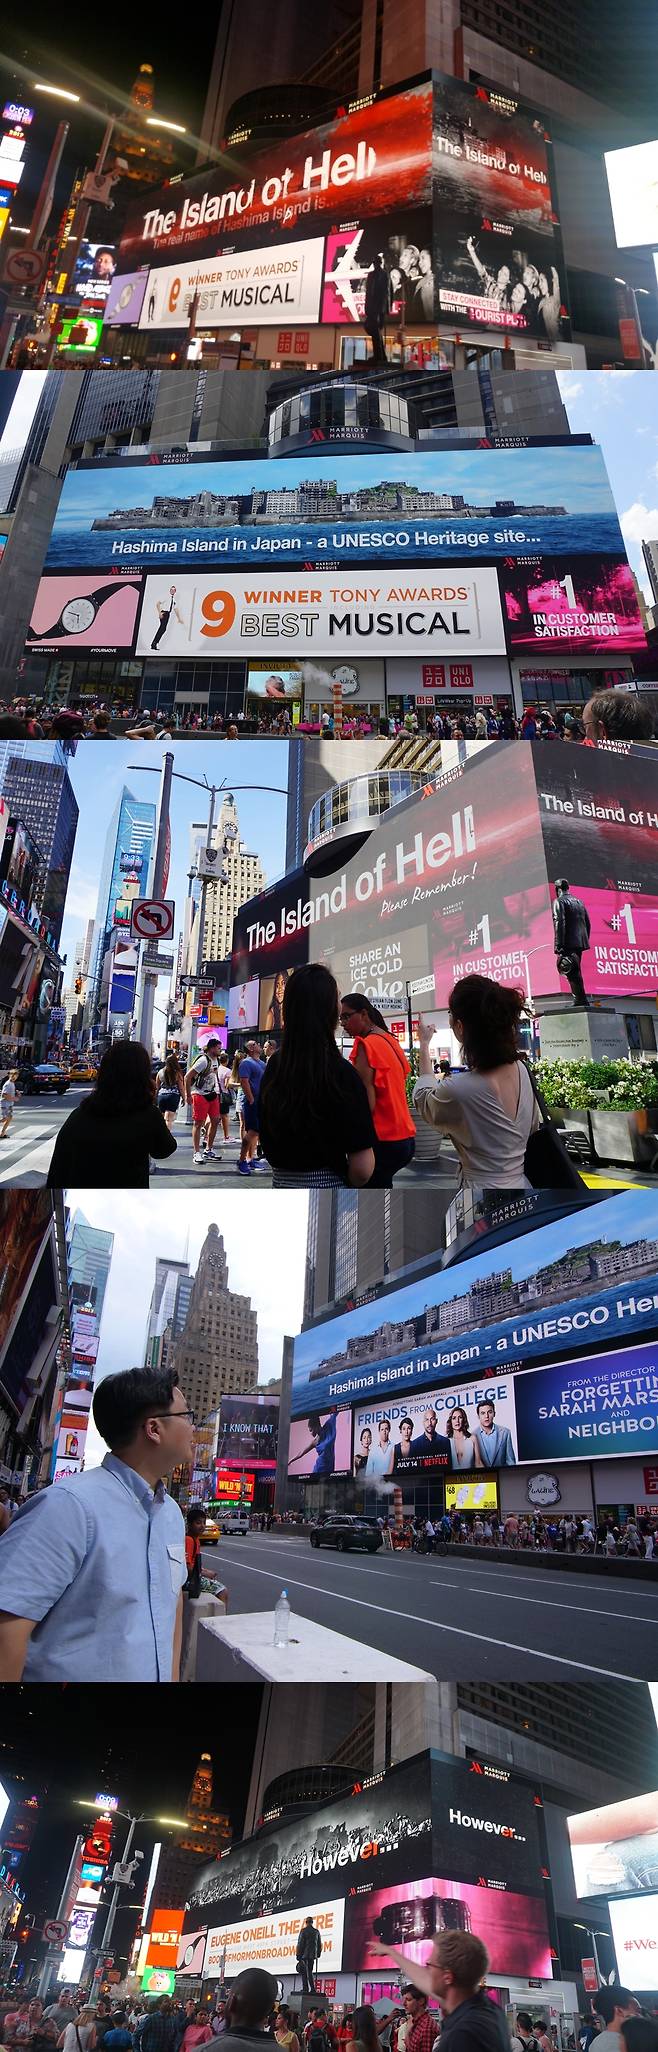 ‘군함도의 진실’ 광고가 노출되고 있는 뉴욕 타임스스퀘어 전광판